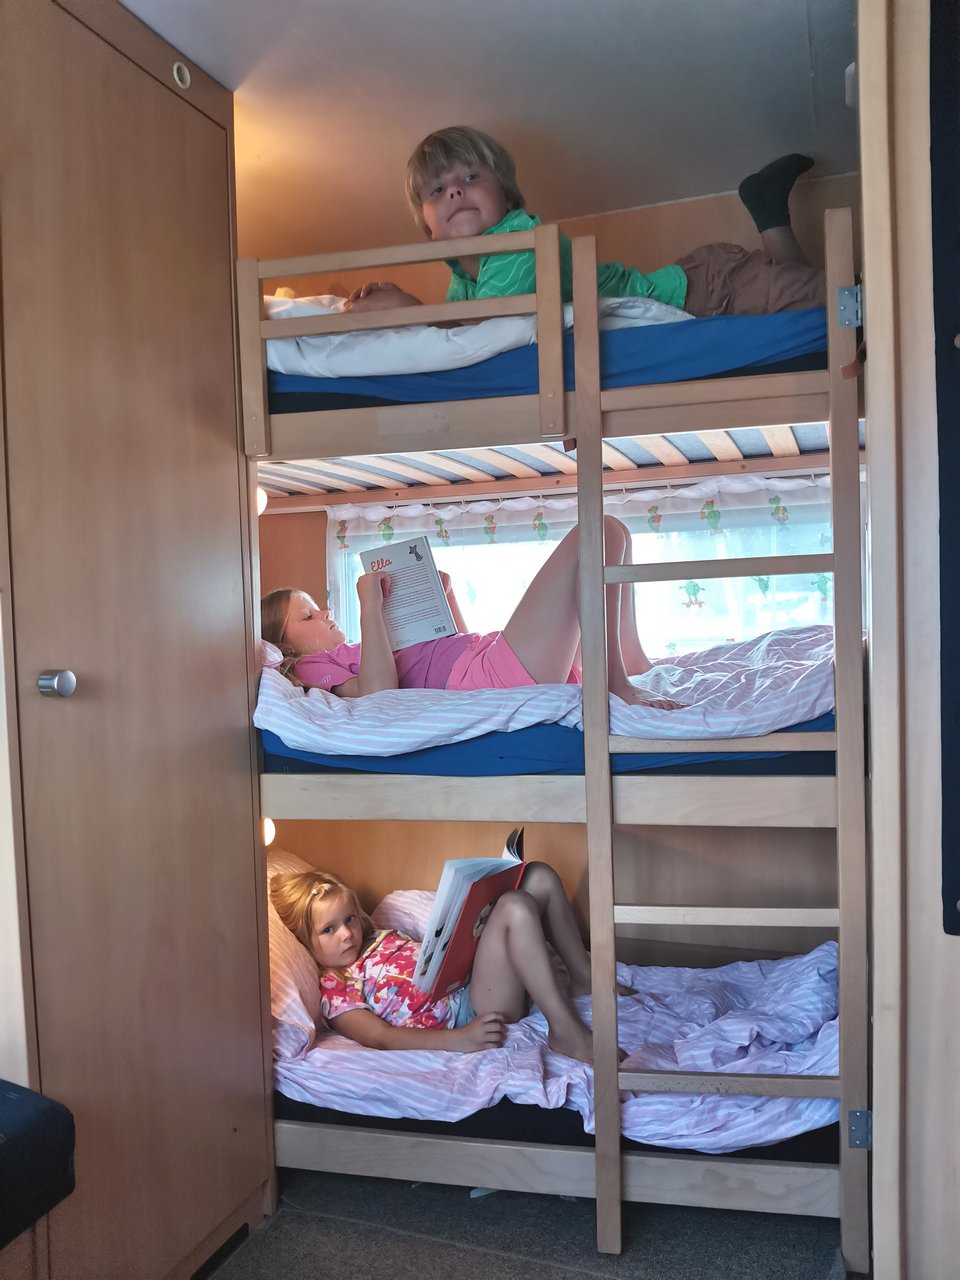 Kolmikerroksinen sänky asuntovaunun perällä on lasten suosikki.